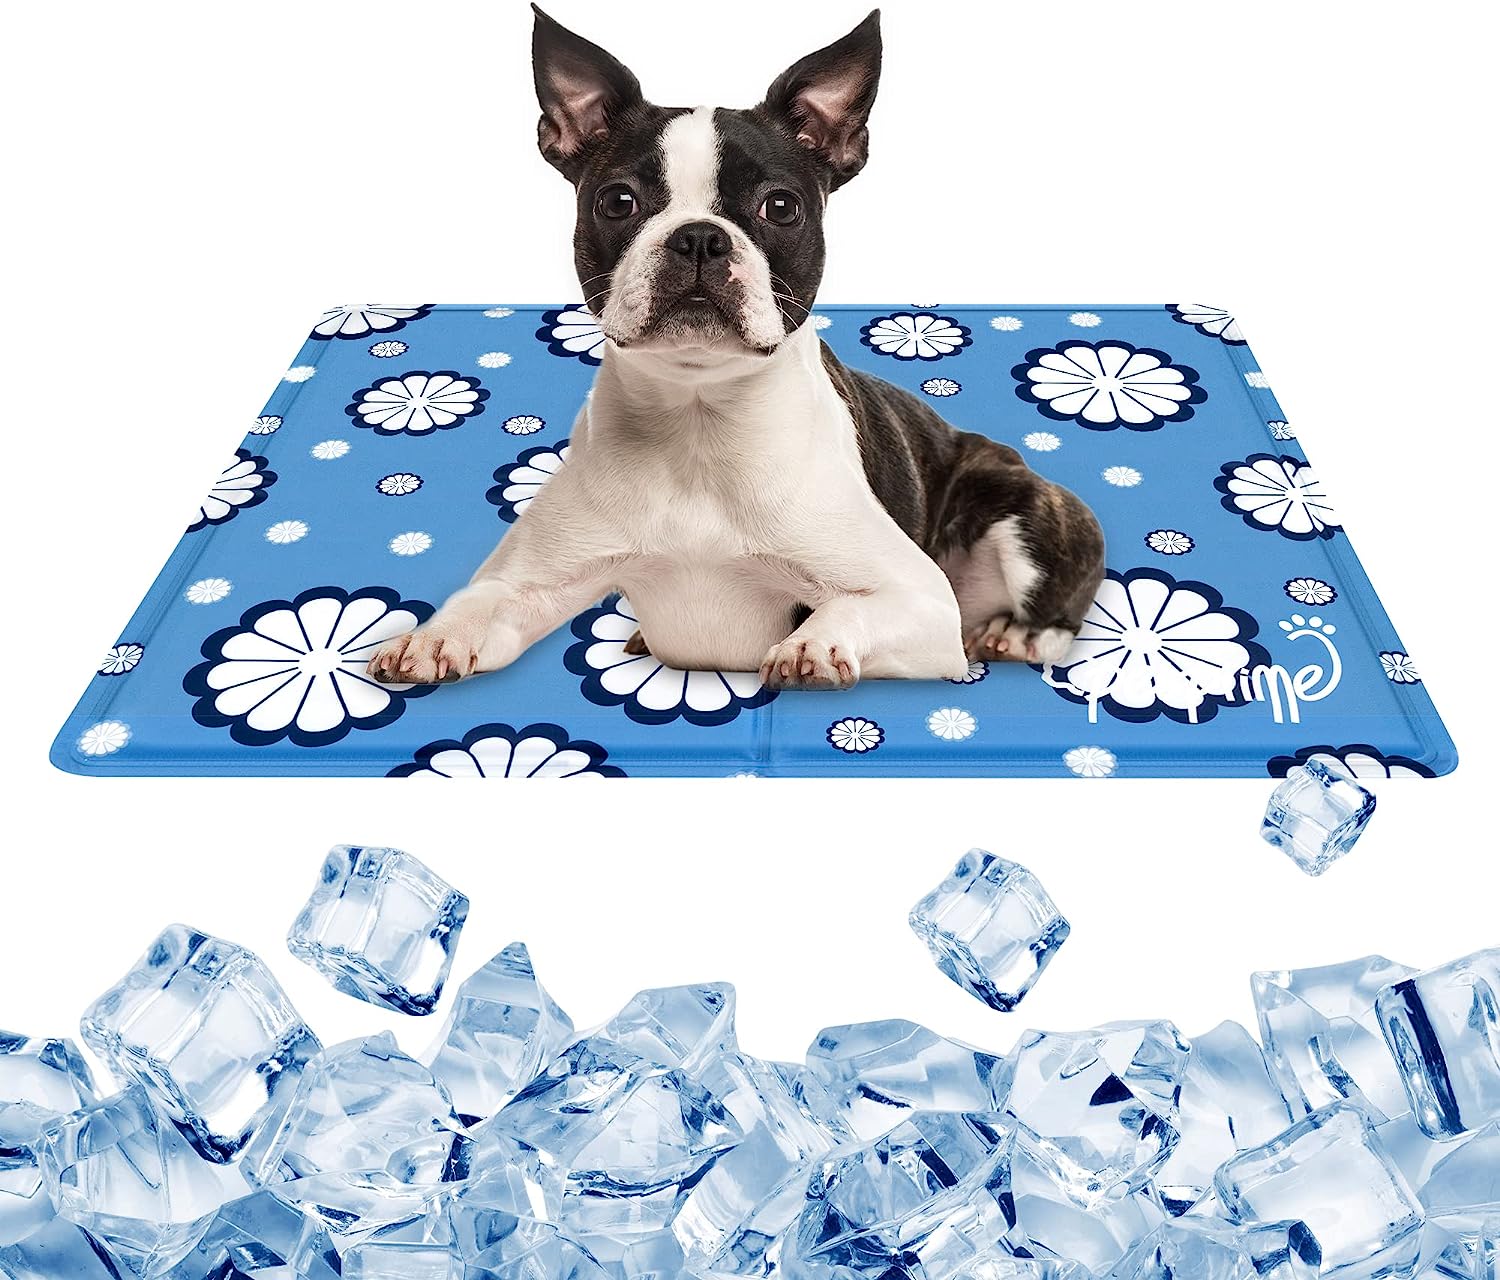 PetPrime Dog Cooling Mat